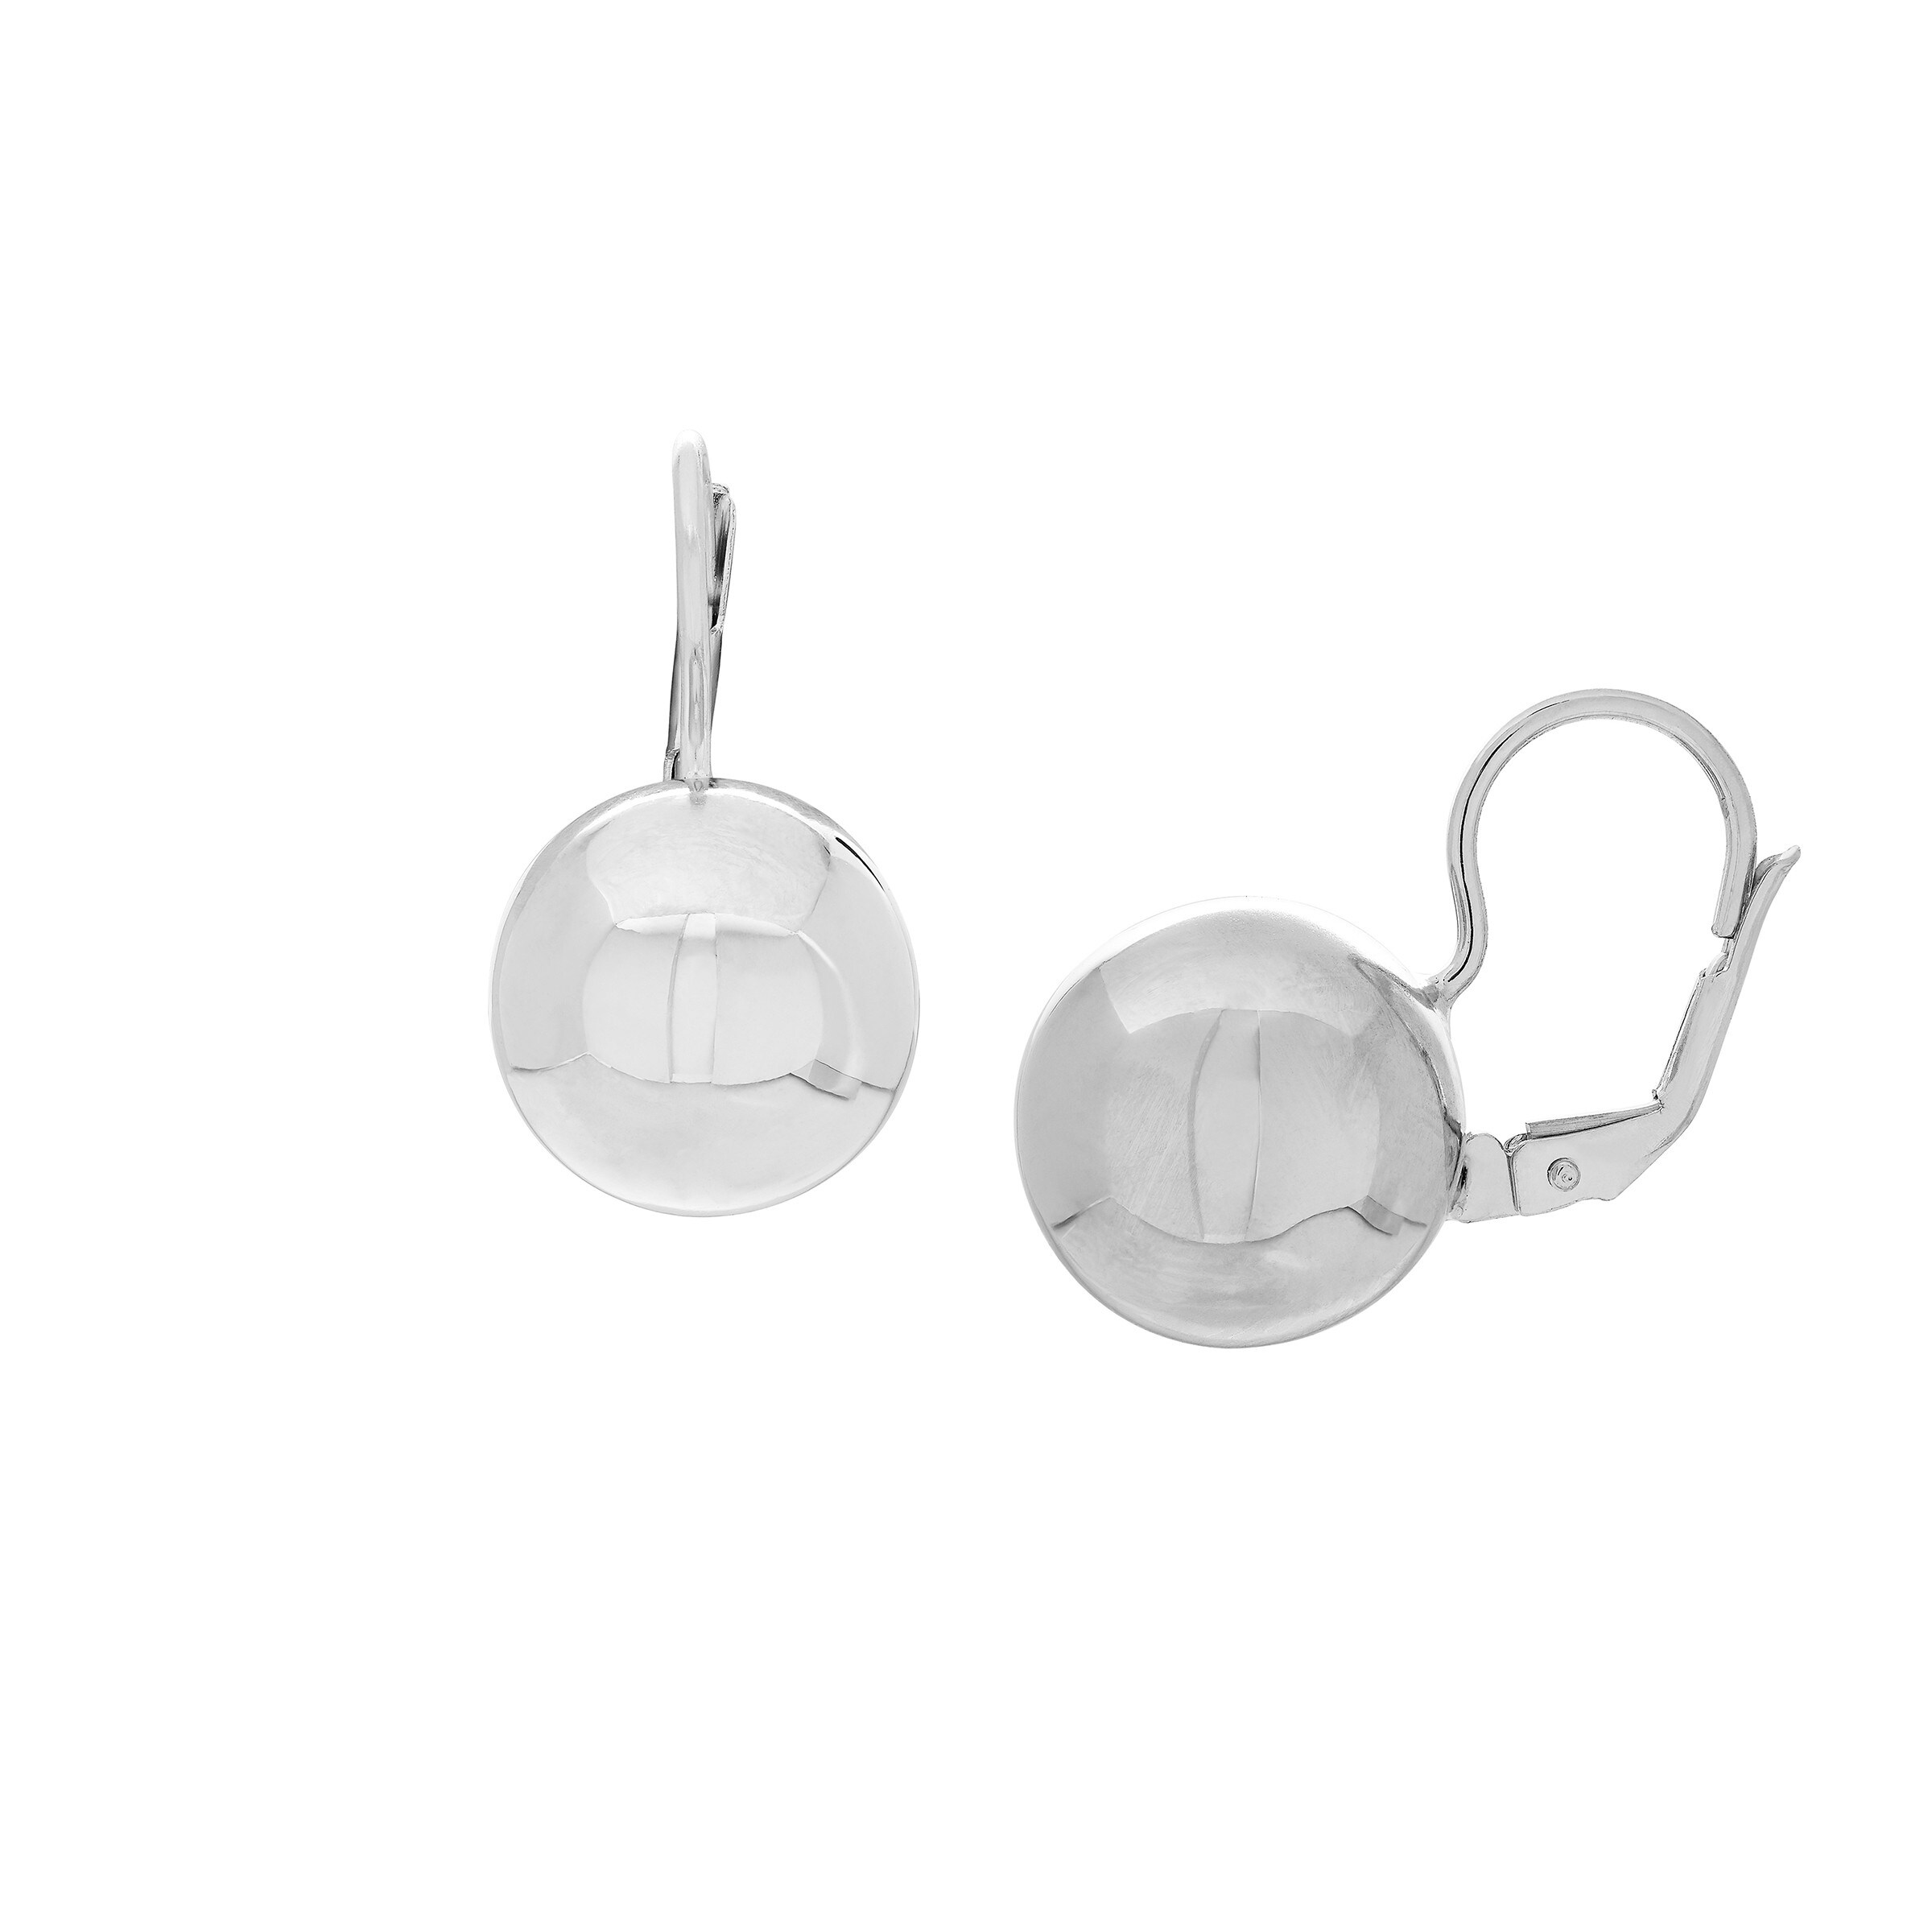 Italian Sterling Silver Solid LeverBack Ball Earrings